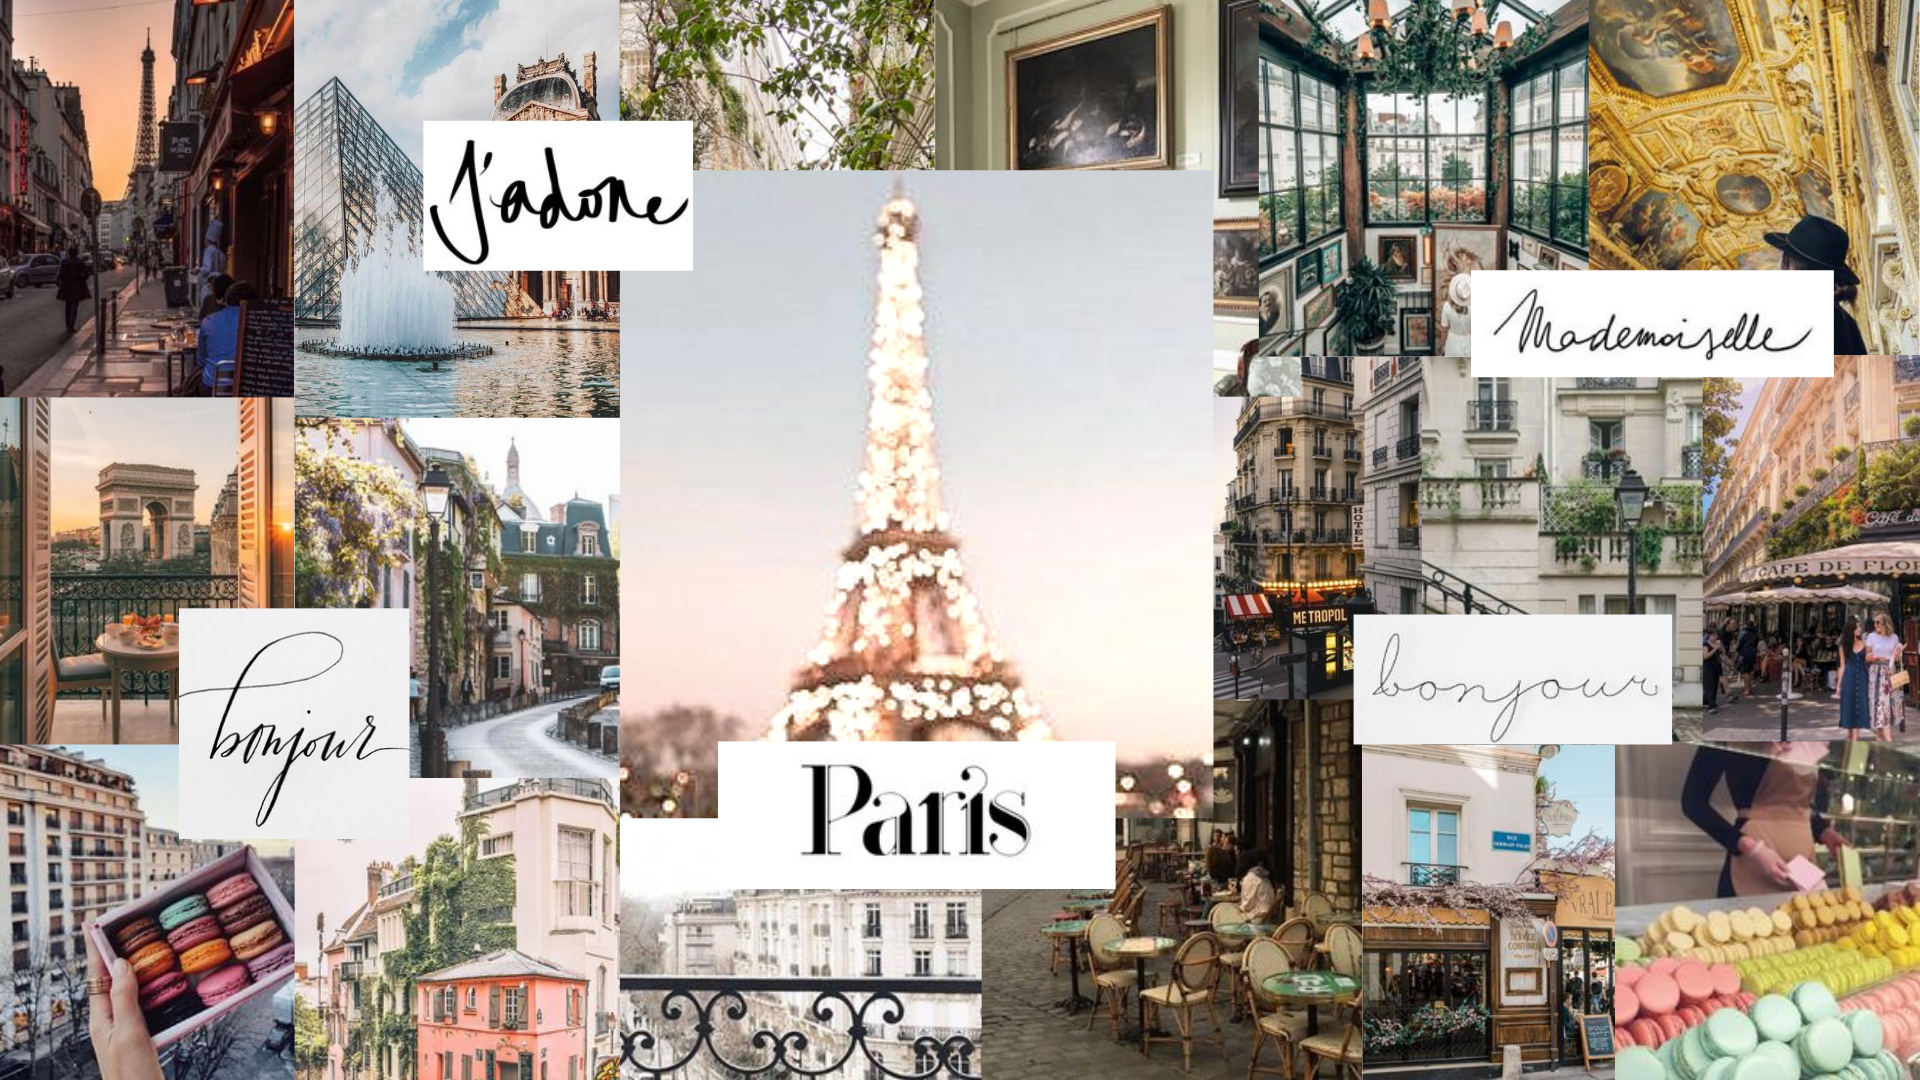 paris wallpaper aesthetic. Paris wallpaper, Aesthetic desktop wallpaper, Wallpaper notebook